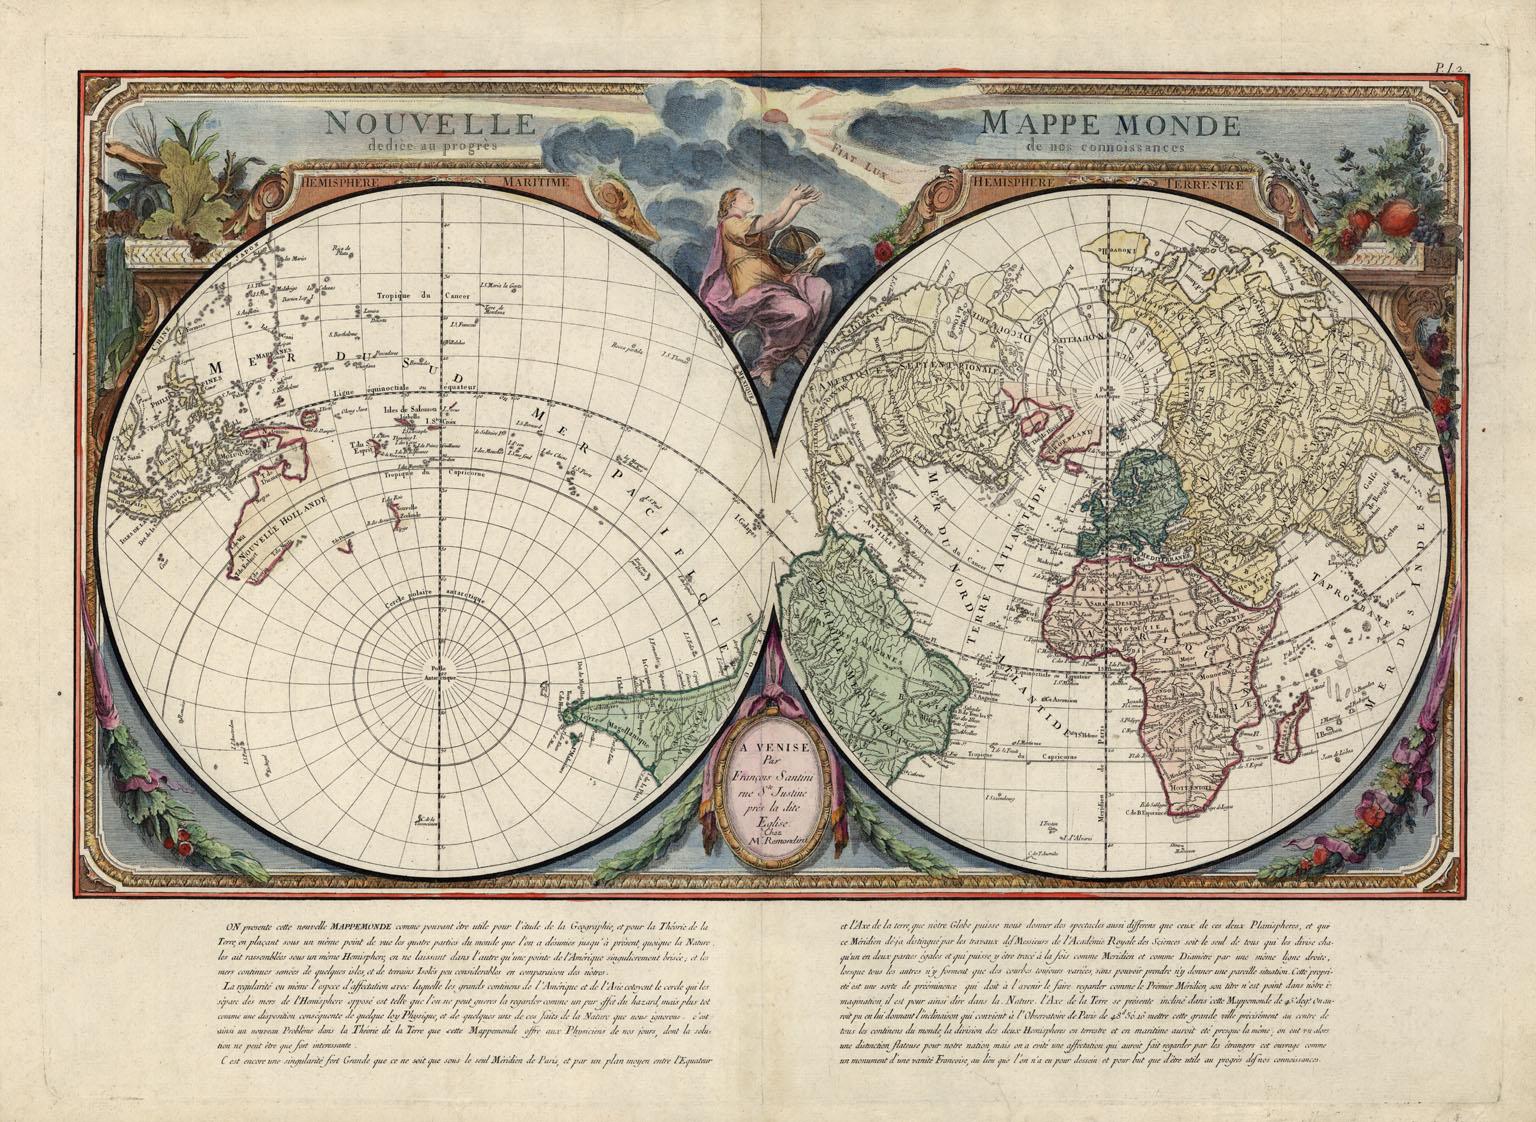 Francois Santini Print - Nouvelle Mappe Monde, dediee au progres de nos connoissances.